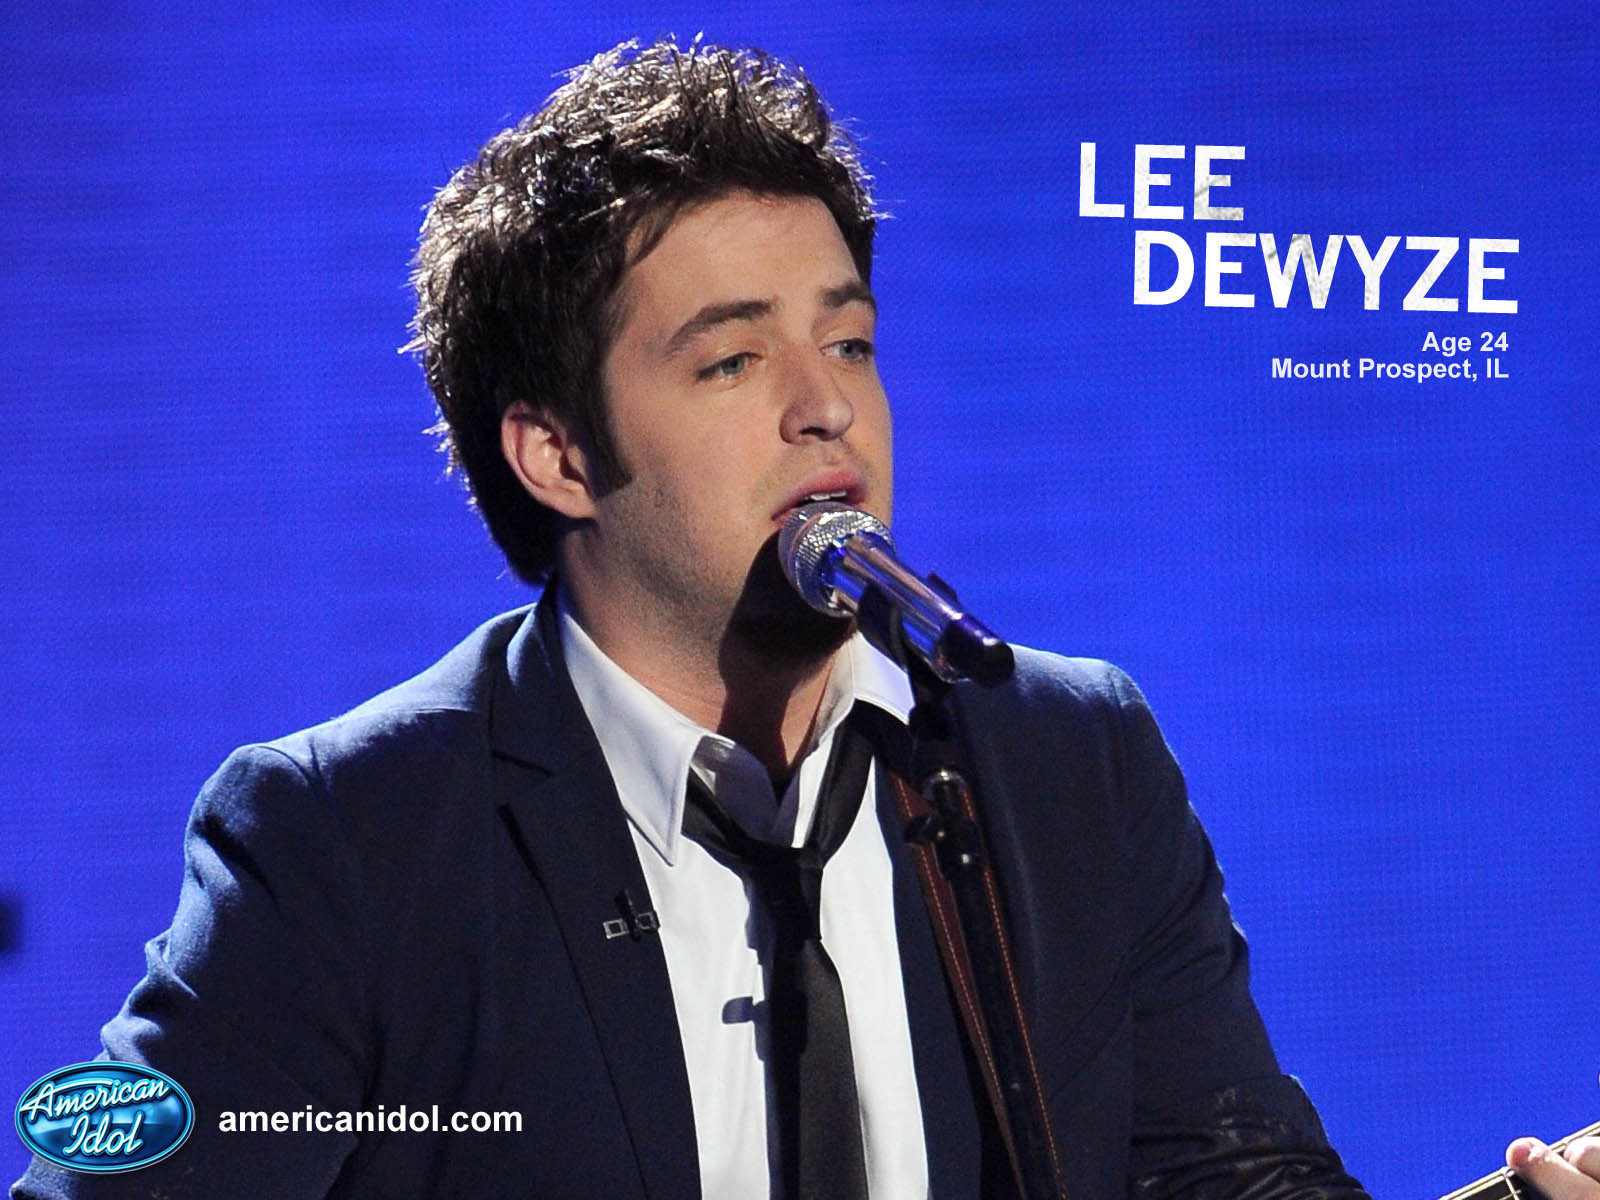 Lee American Idol Wallpaper Dewyze